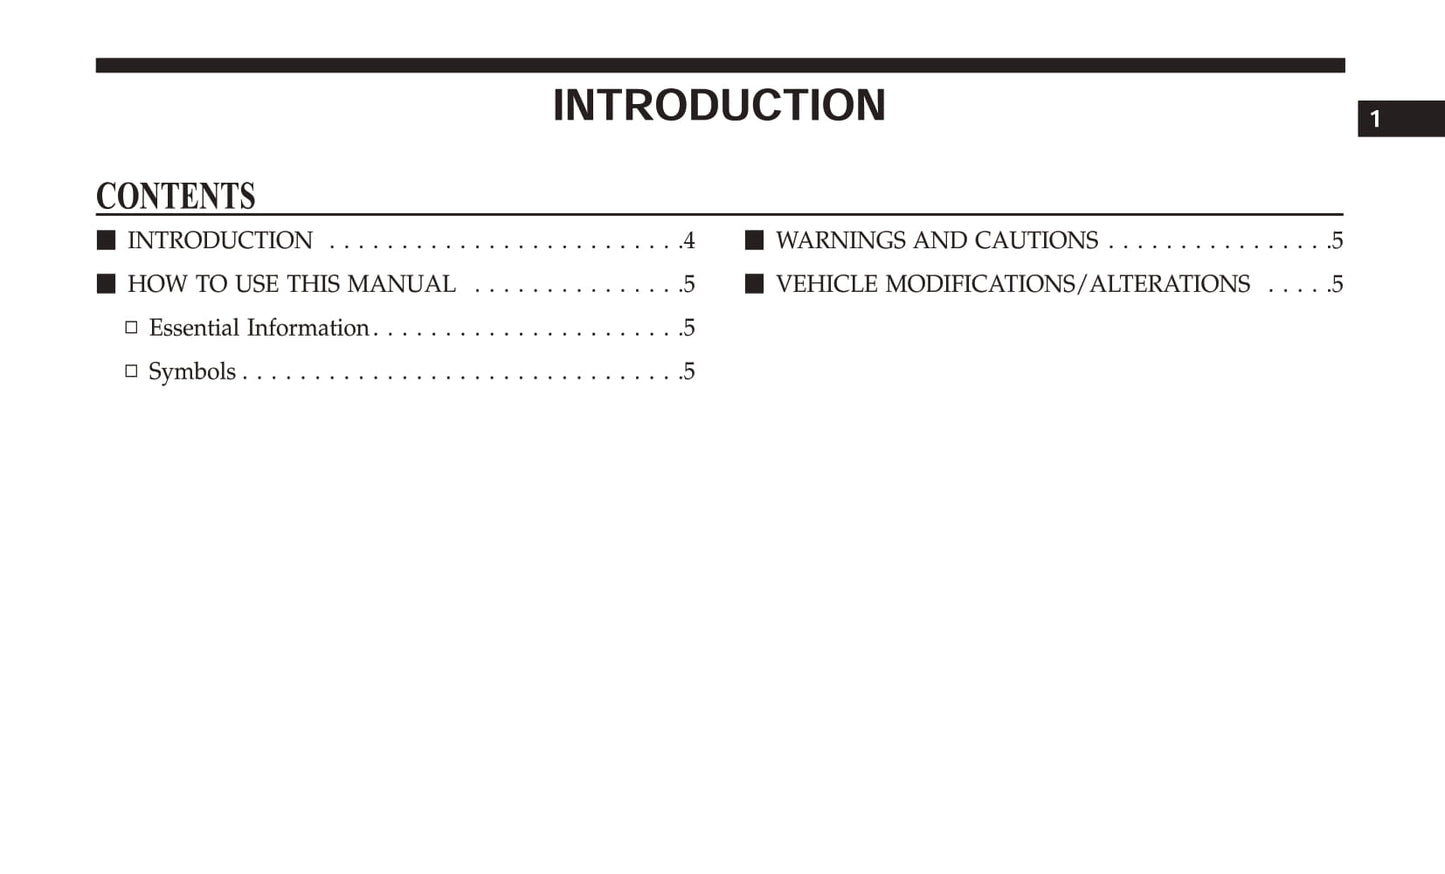 2019 Chrysler 300 Gebruikershandleiding | Engels